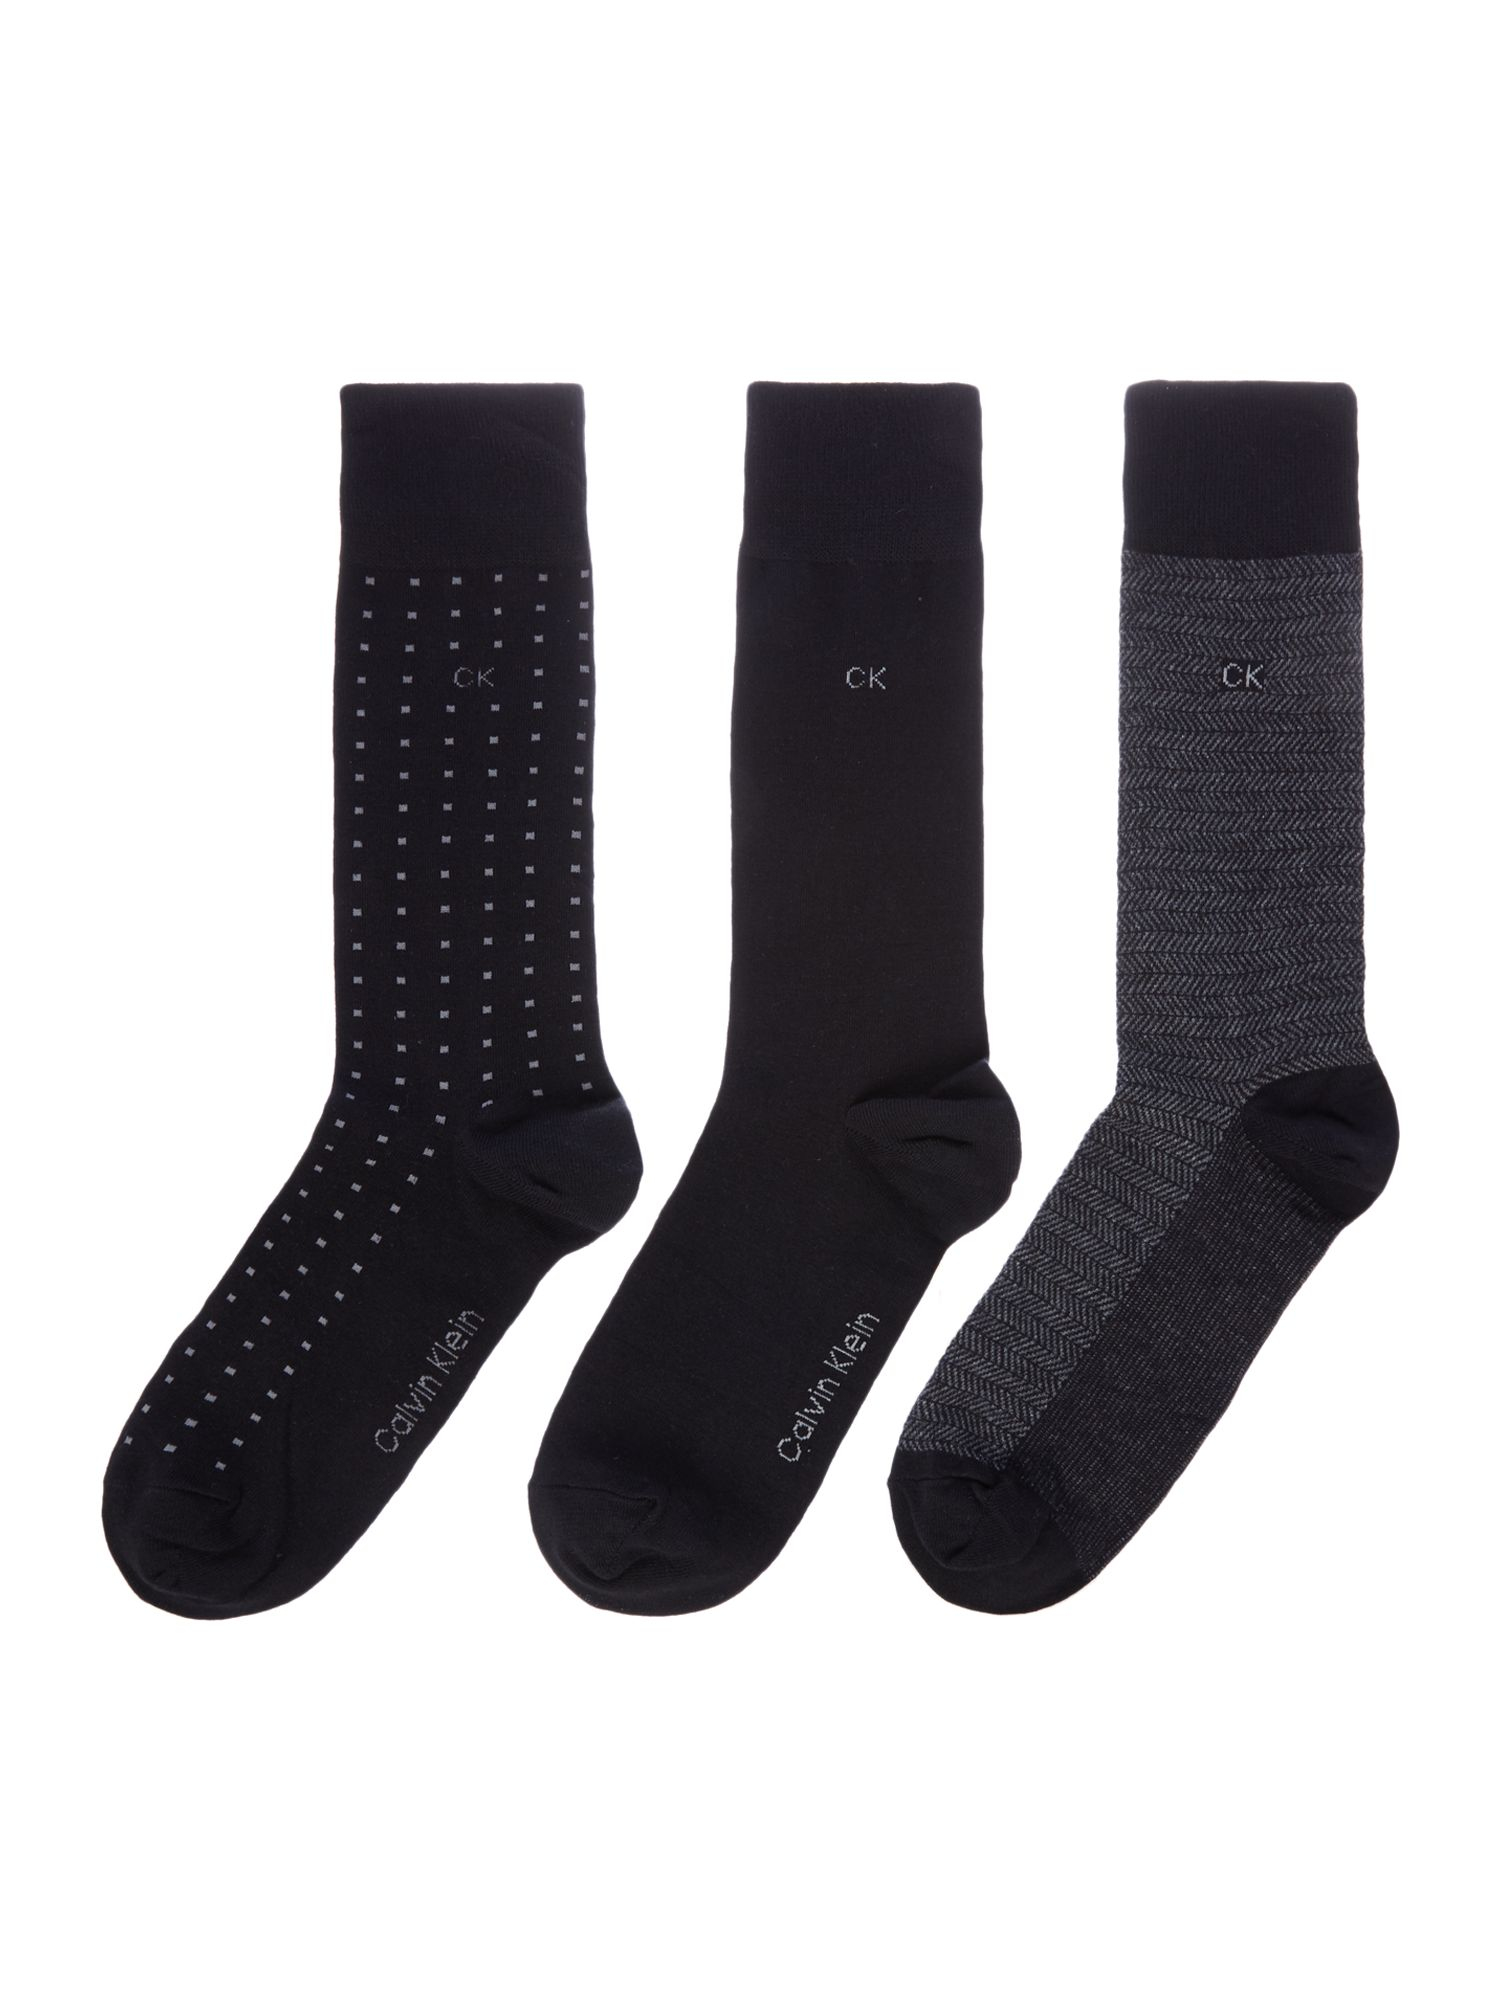 Calvin Klein Ck 3 Pack Spotted Socks in Black for Men - Lyst